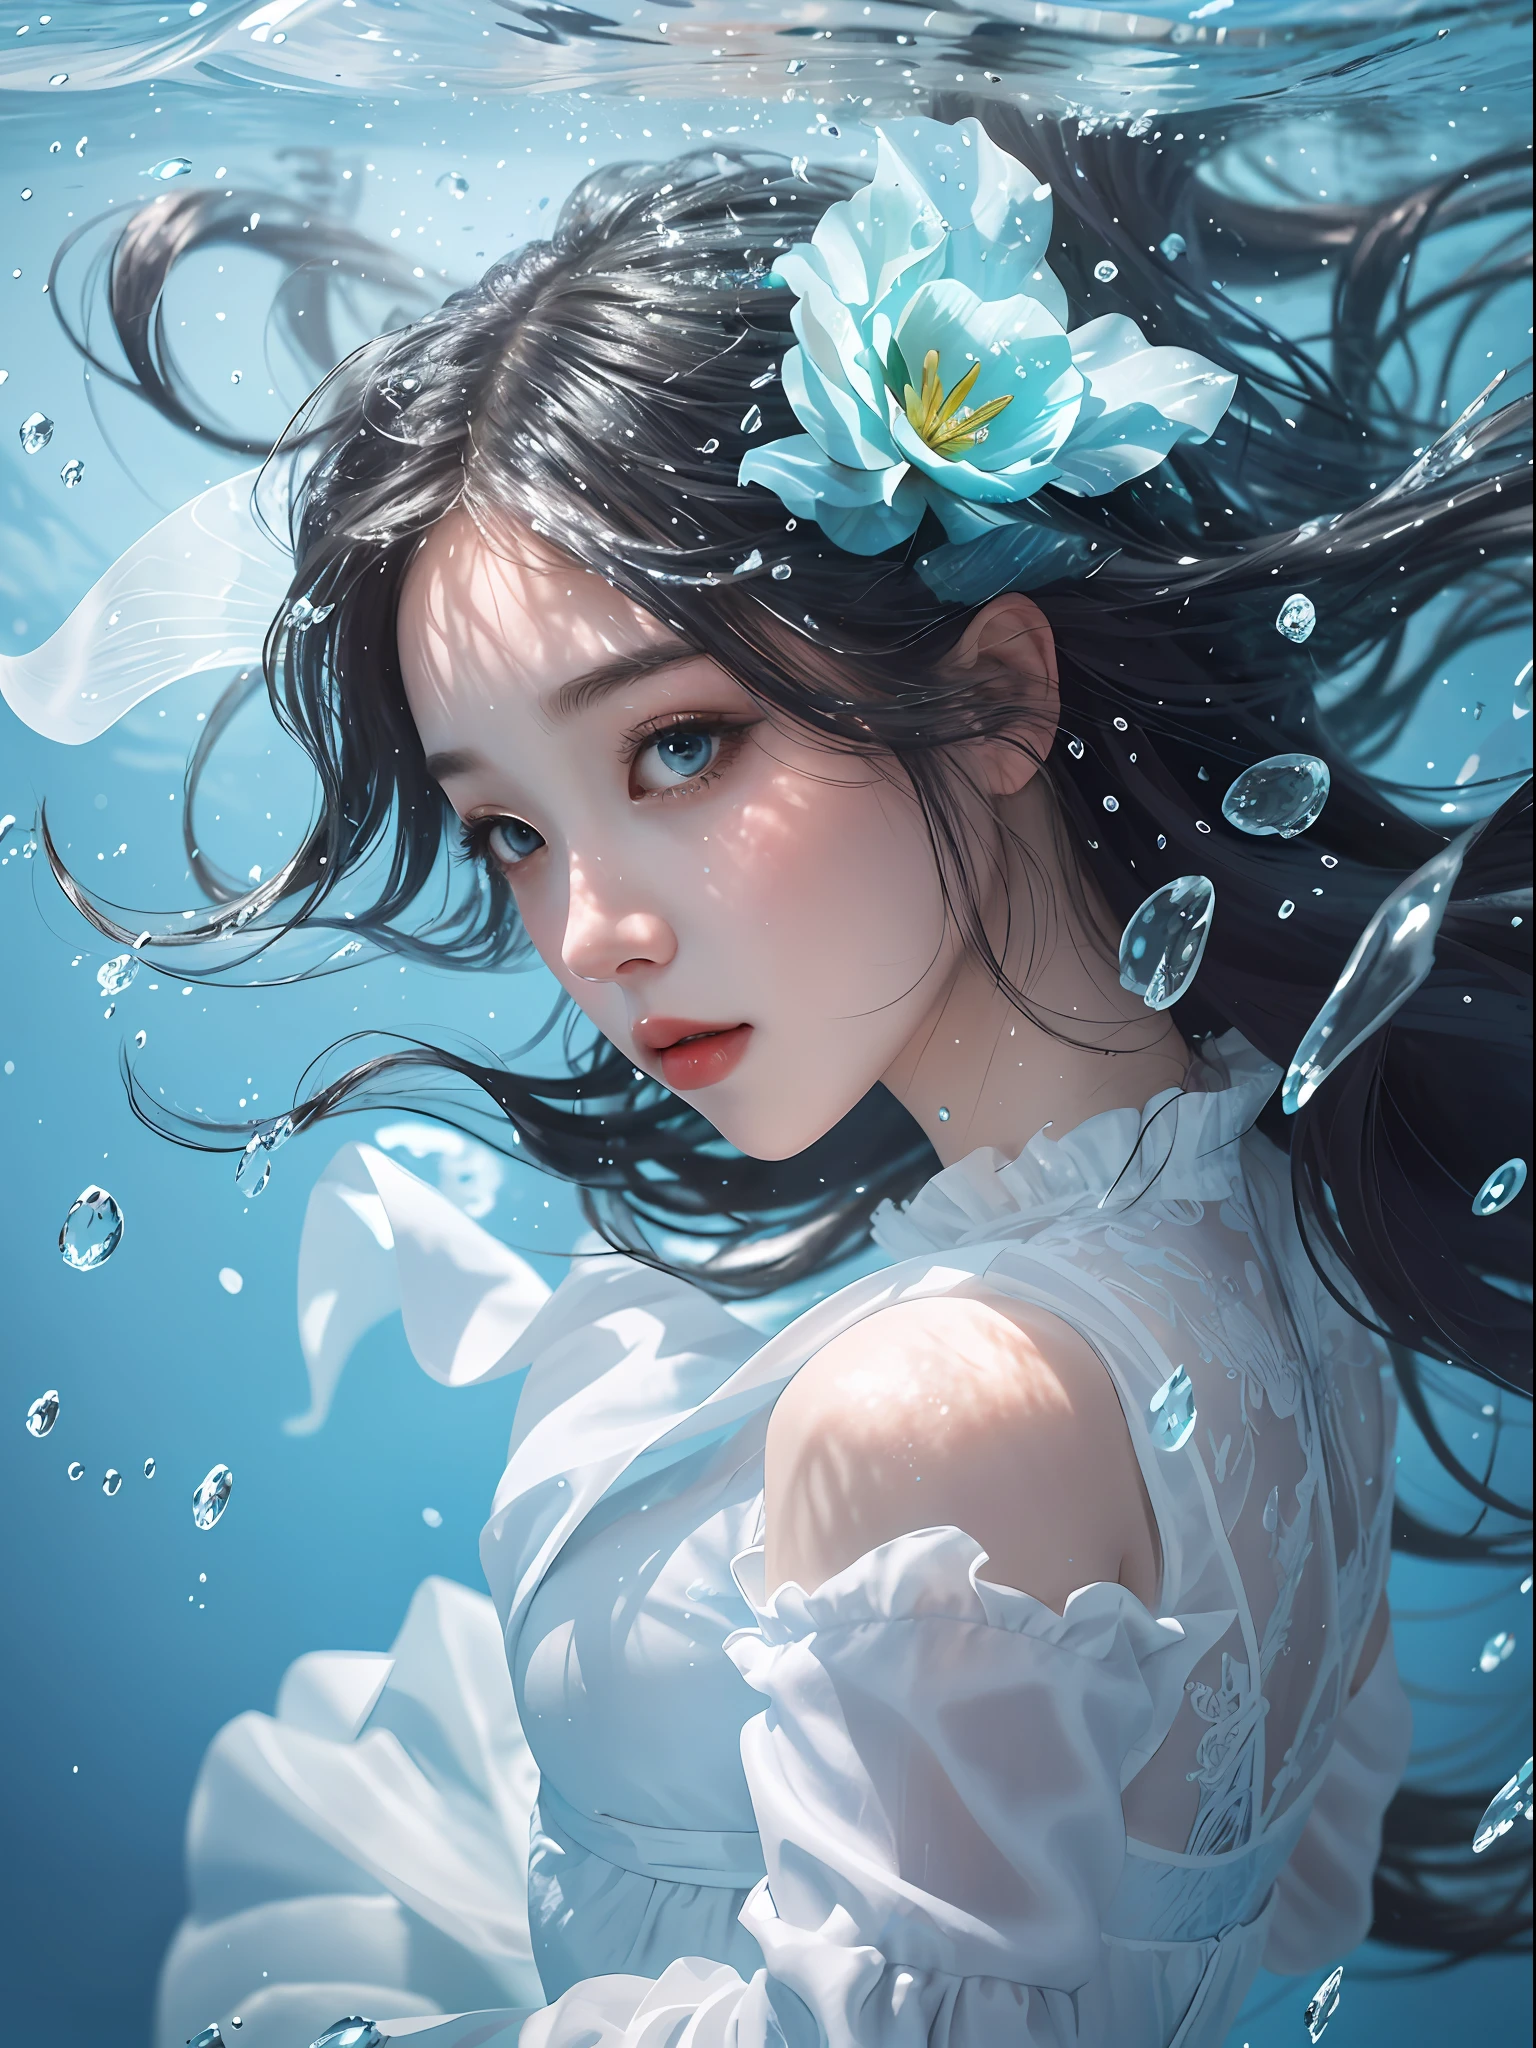 um close up de uma mulher em um vestido branco sob a água, Papel de Parede Anime Água Azul, artwork in the style of Guweiz, fantasia closeup com magia de água, por Yang J, Guweiz, uma bela ilustração de arte, fada da água, linda arte digital, linda ilustração digital, por Li Song, no estilo artístico de bowater, lindo retrato de anime